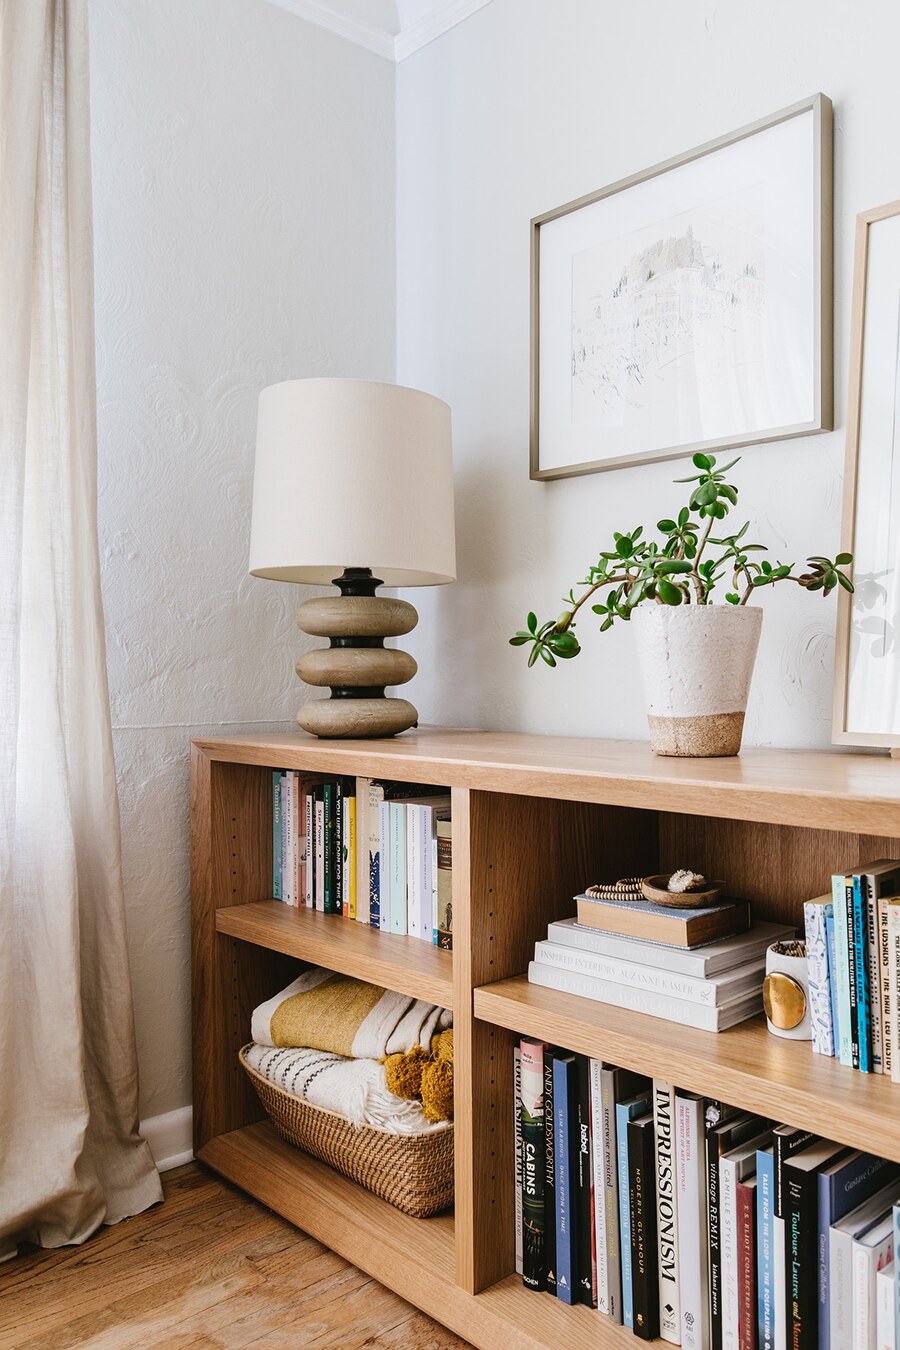 Una estantería baja de madera con libros y adornos, como una canasta llena de textiles, una lámpara y una planta.